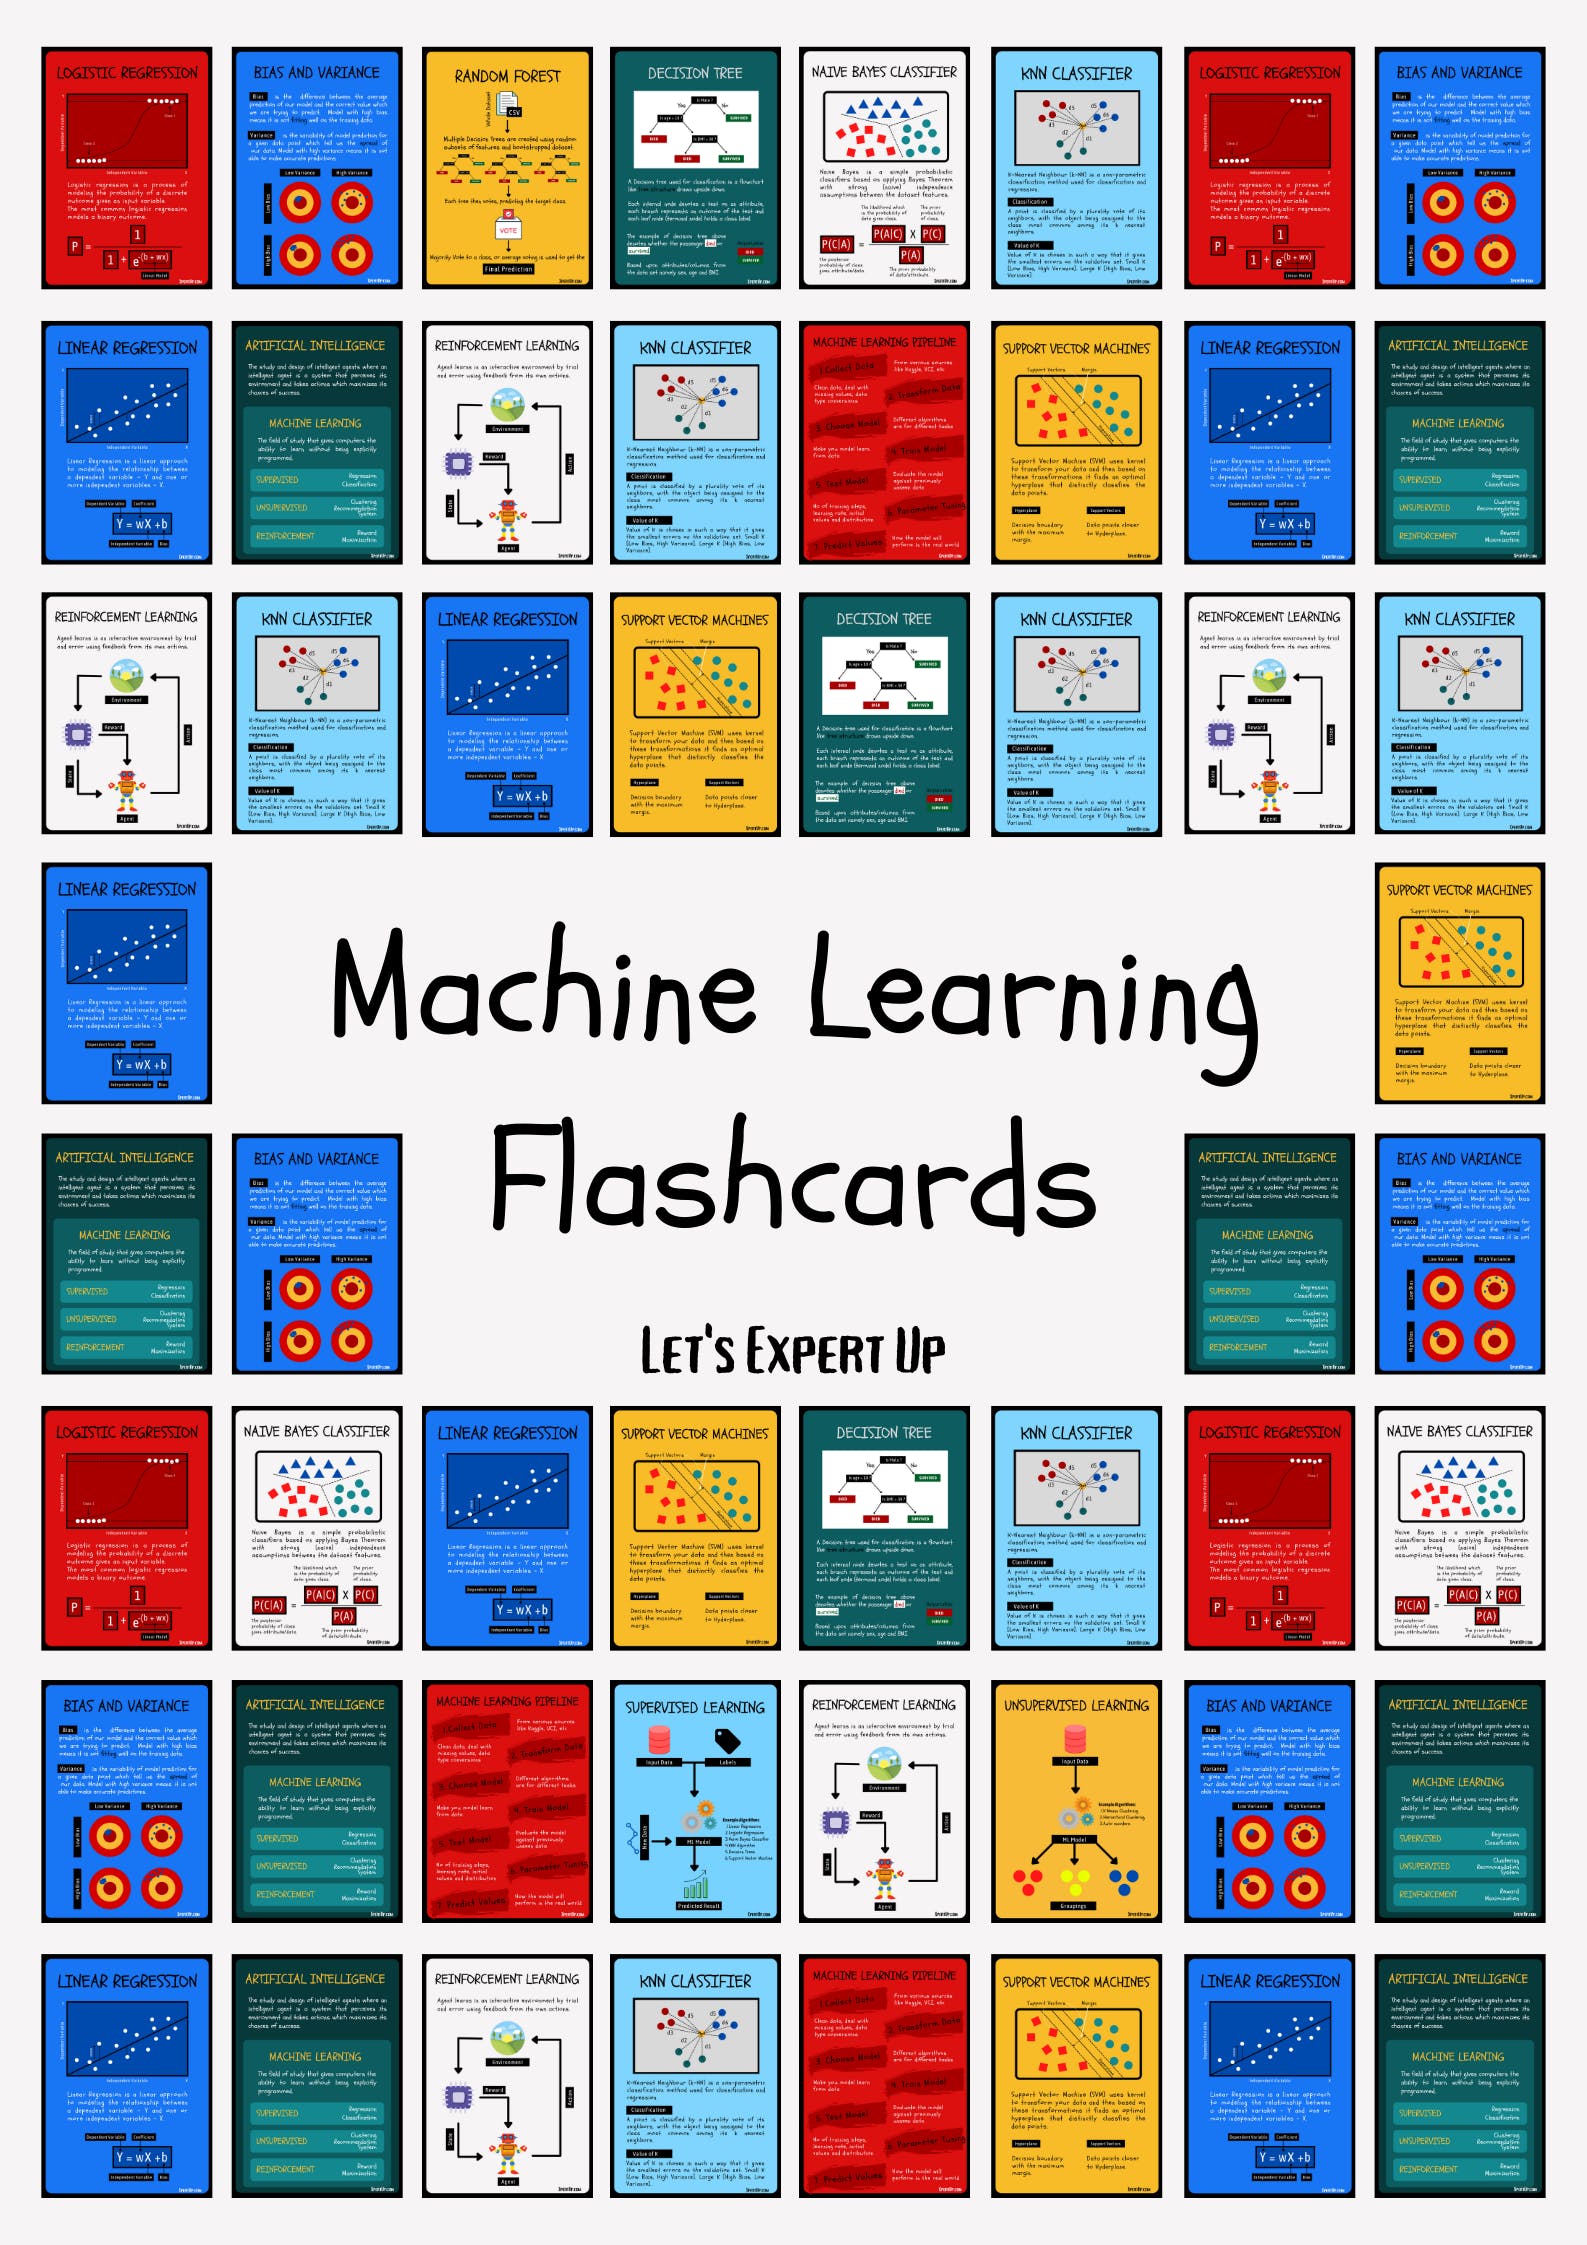 Machine Learning Flashcards media 2